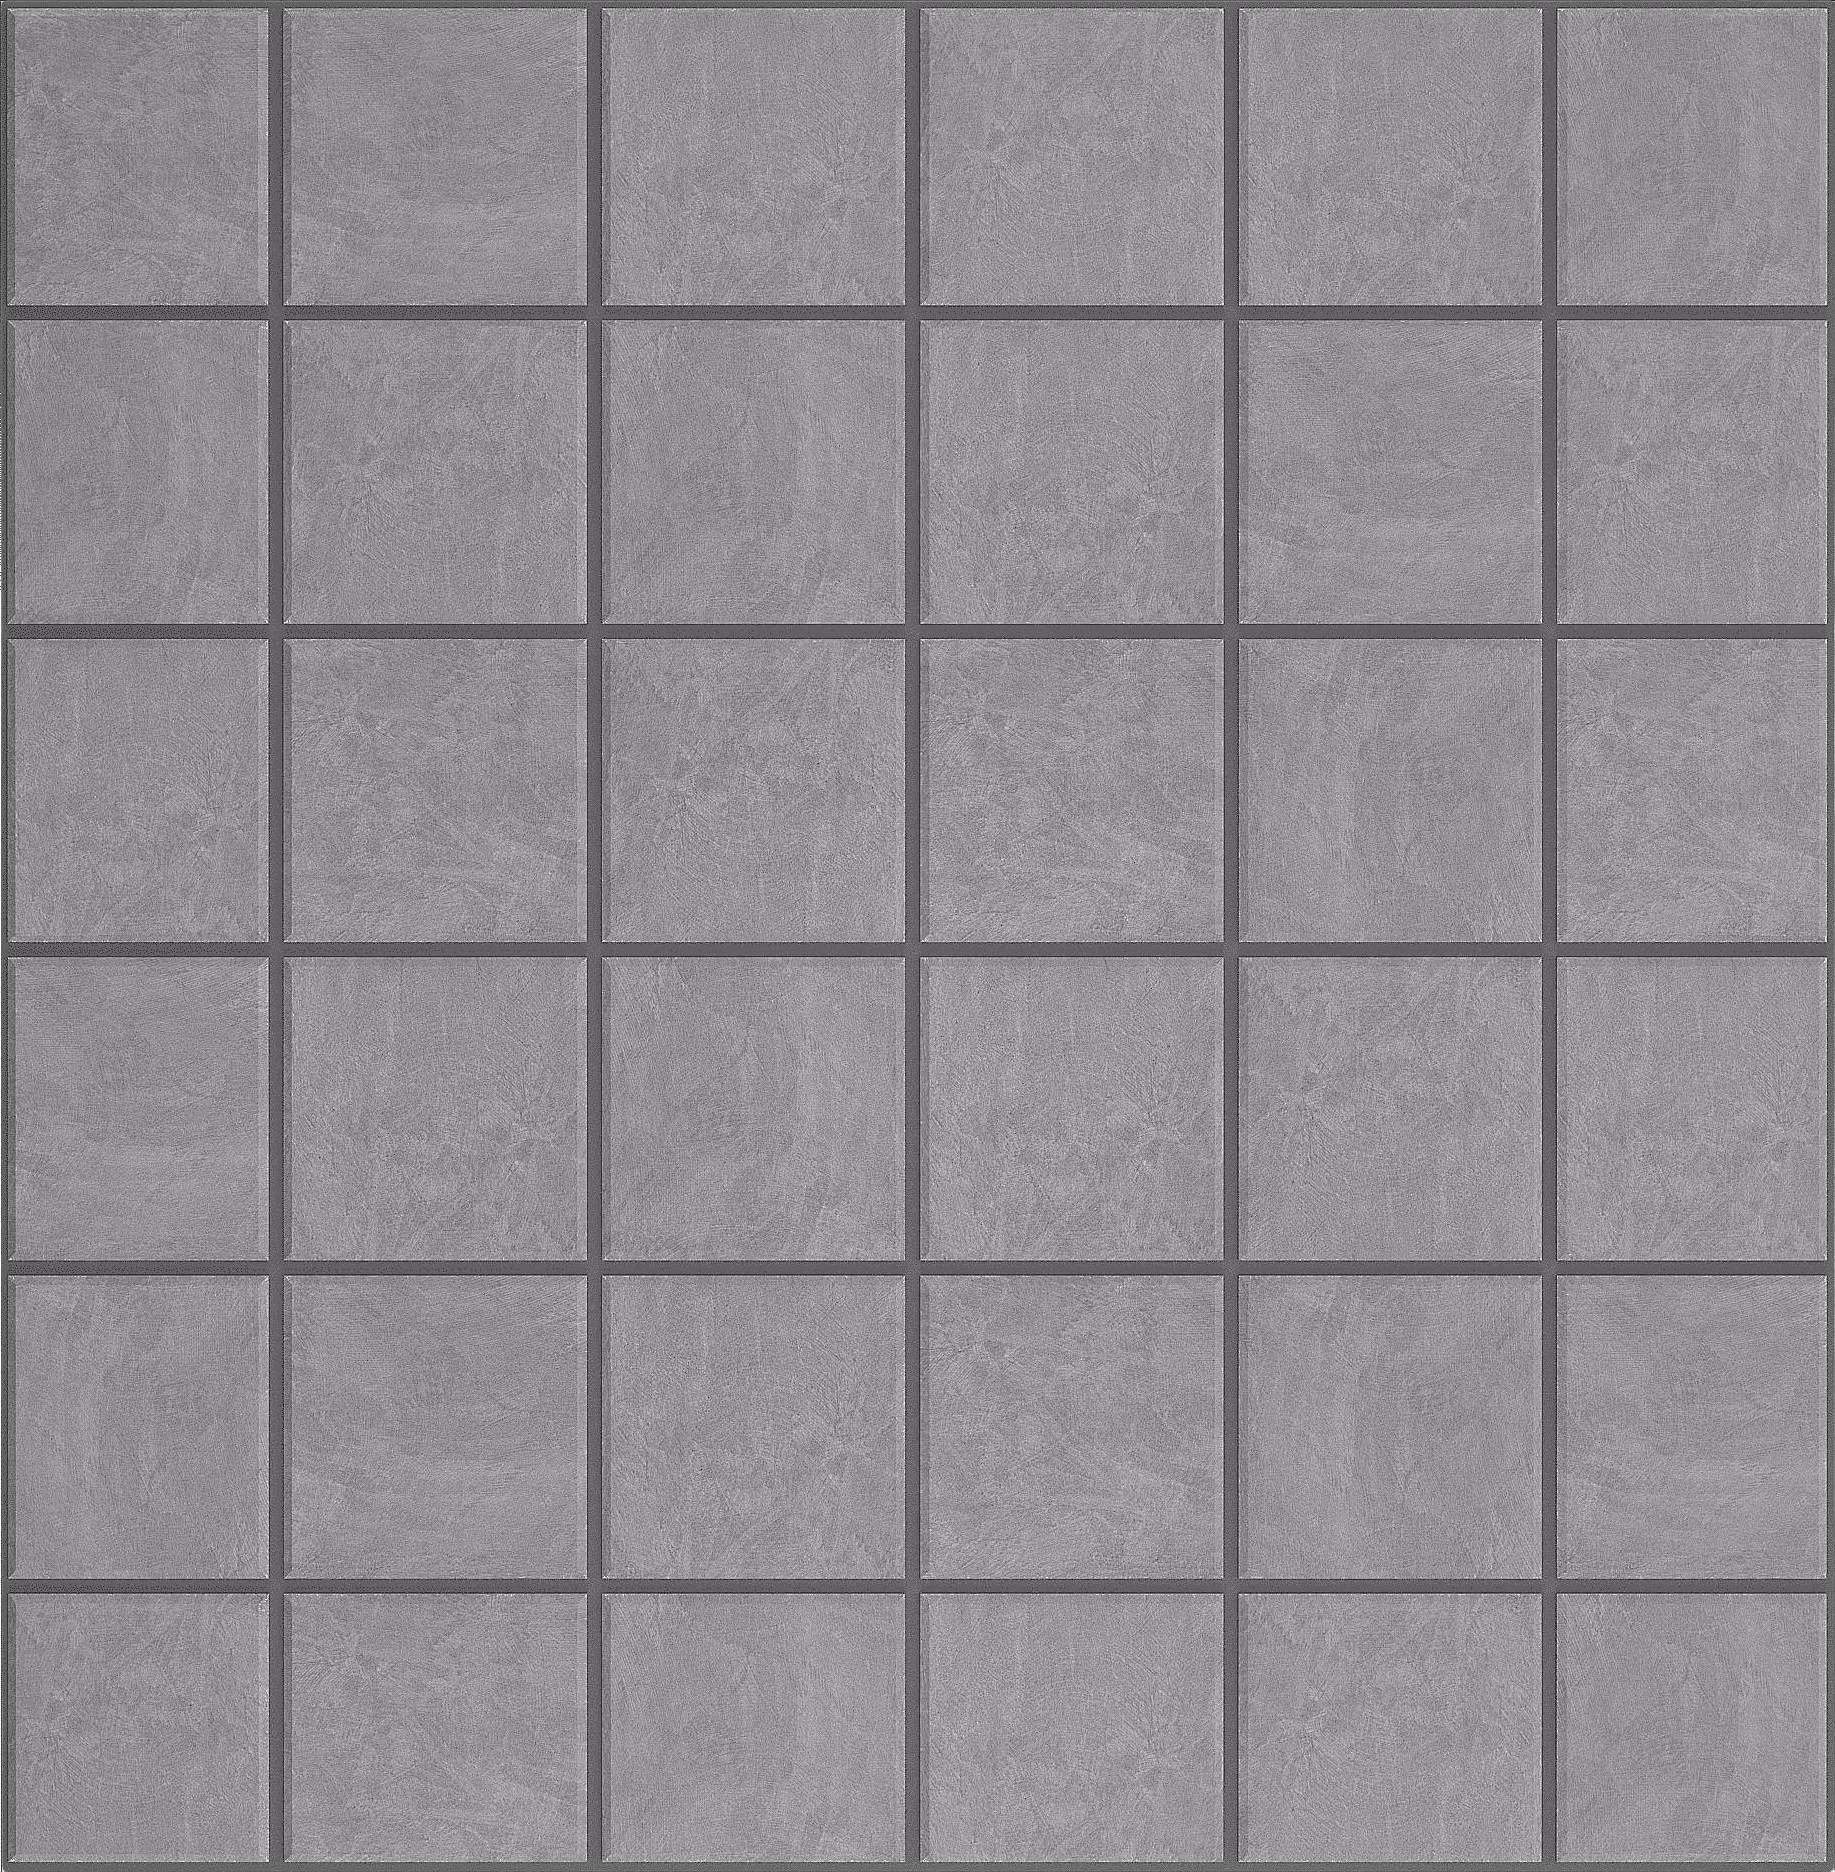 Мозаика Ametis Spectrum Grey SR01 (5x5) Непол. 30x30 мозаика ametis spectrum grey sr01 5x5 непол 30x30